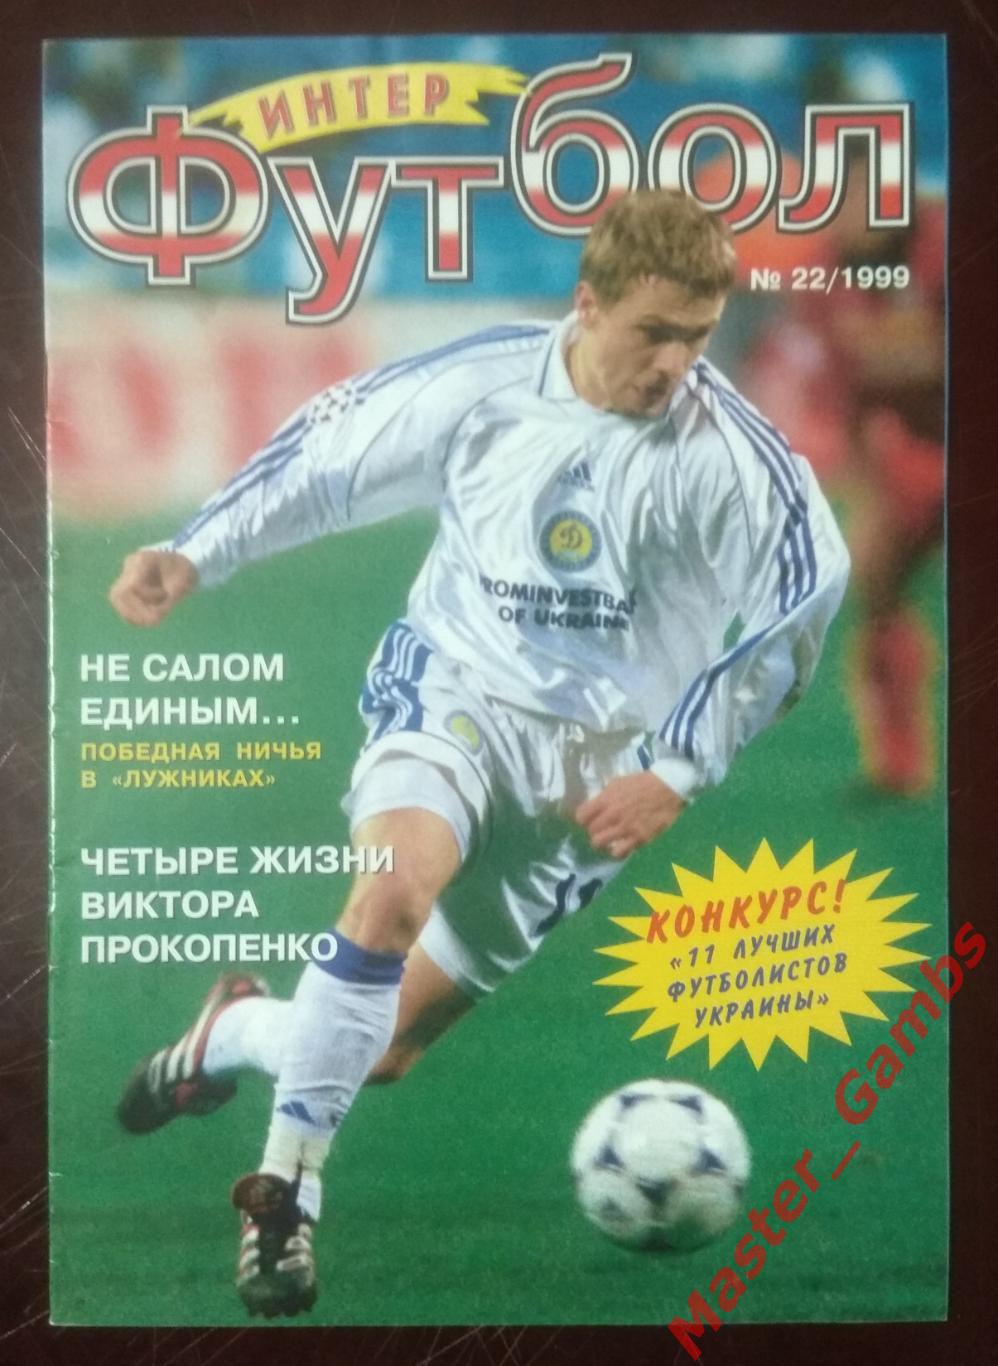 Журнал Футбол интер # 8 (22) 1999 (Металлург Мариуполь)